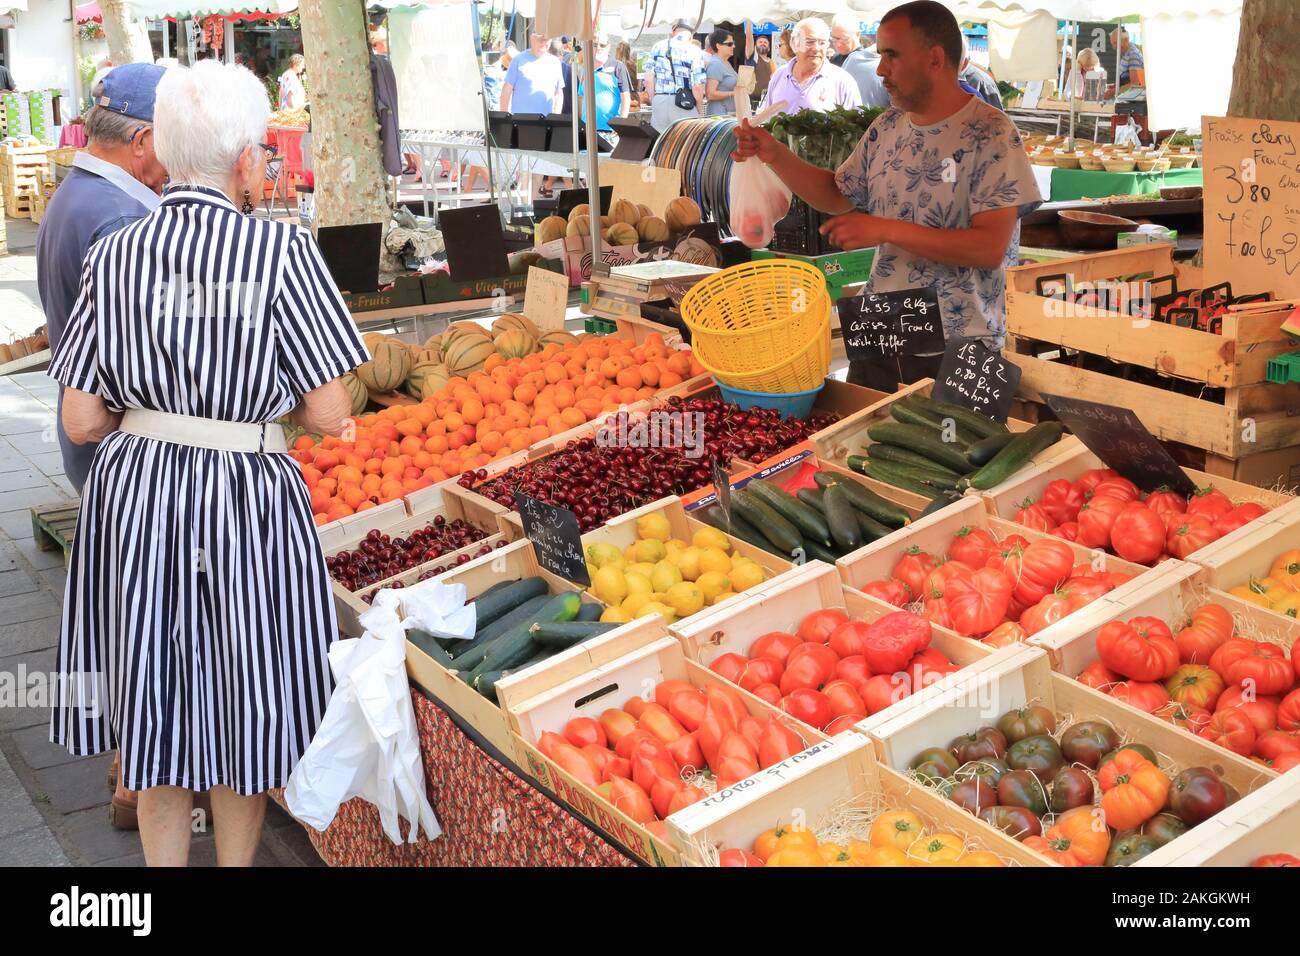 France, Gard, Petite Camargue, Le Grau-du-Roi, Place de la Republique, market, fruit and vegetable seller Stock Photo